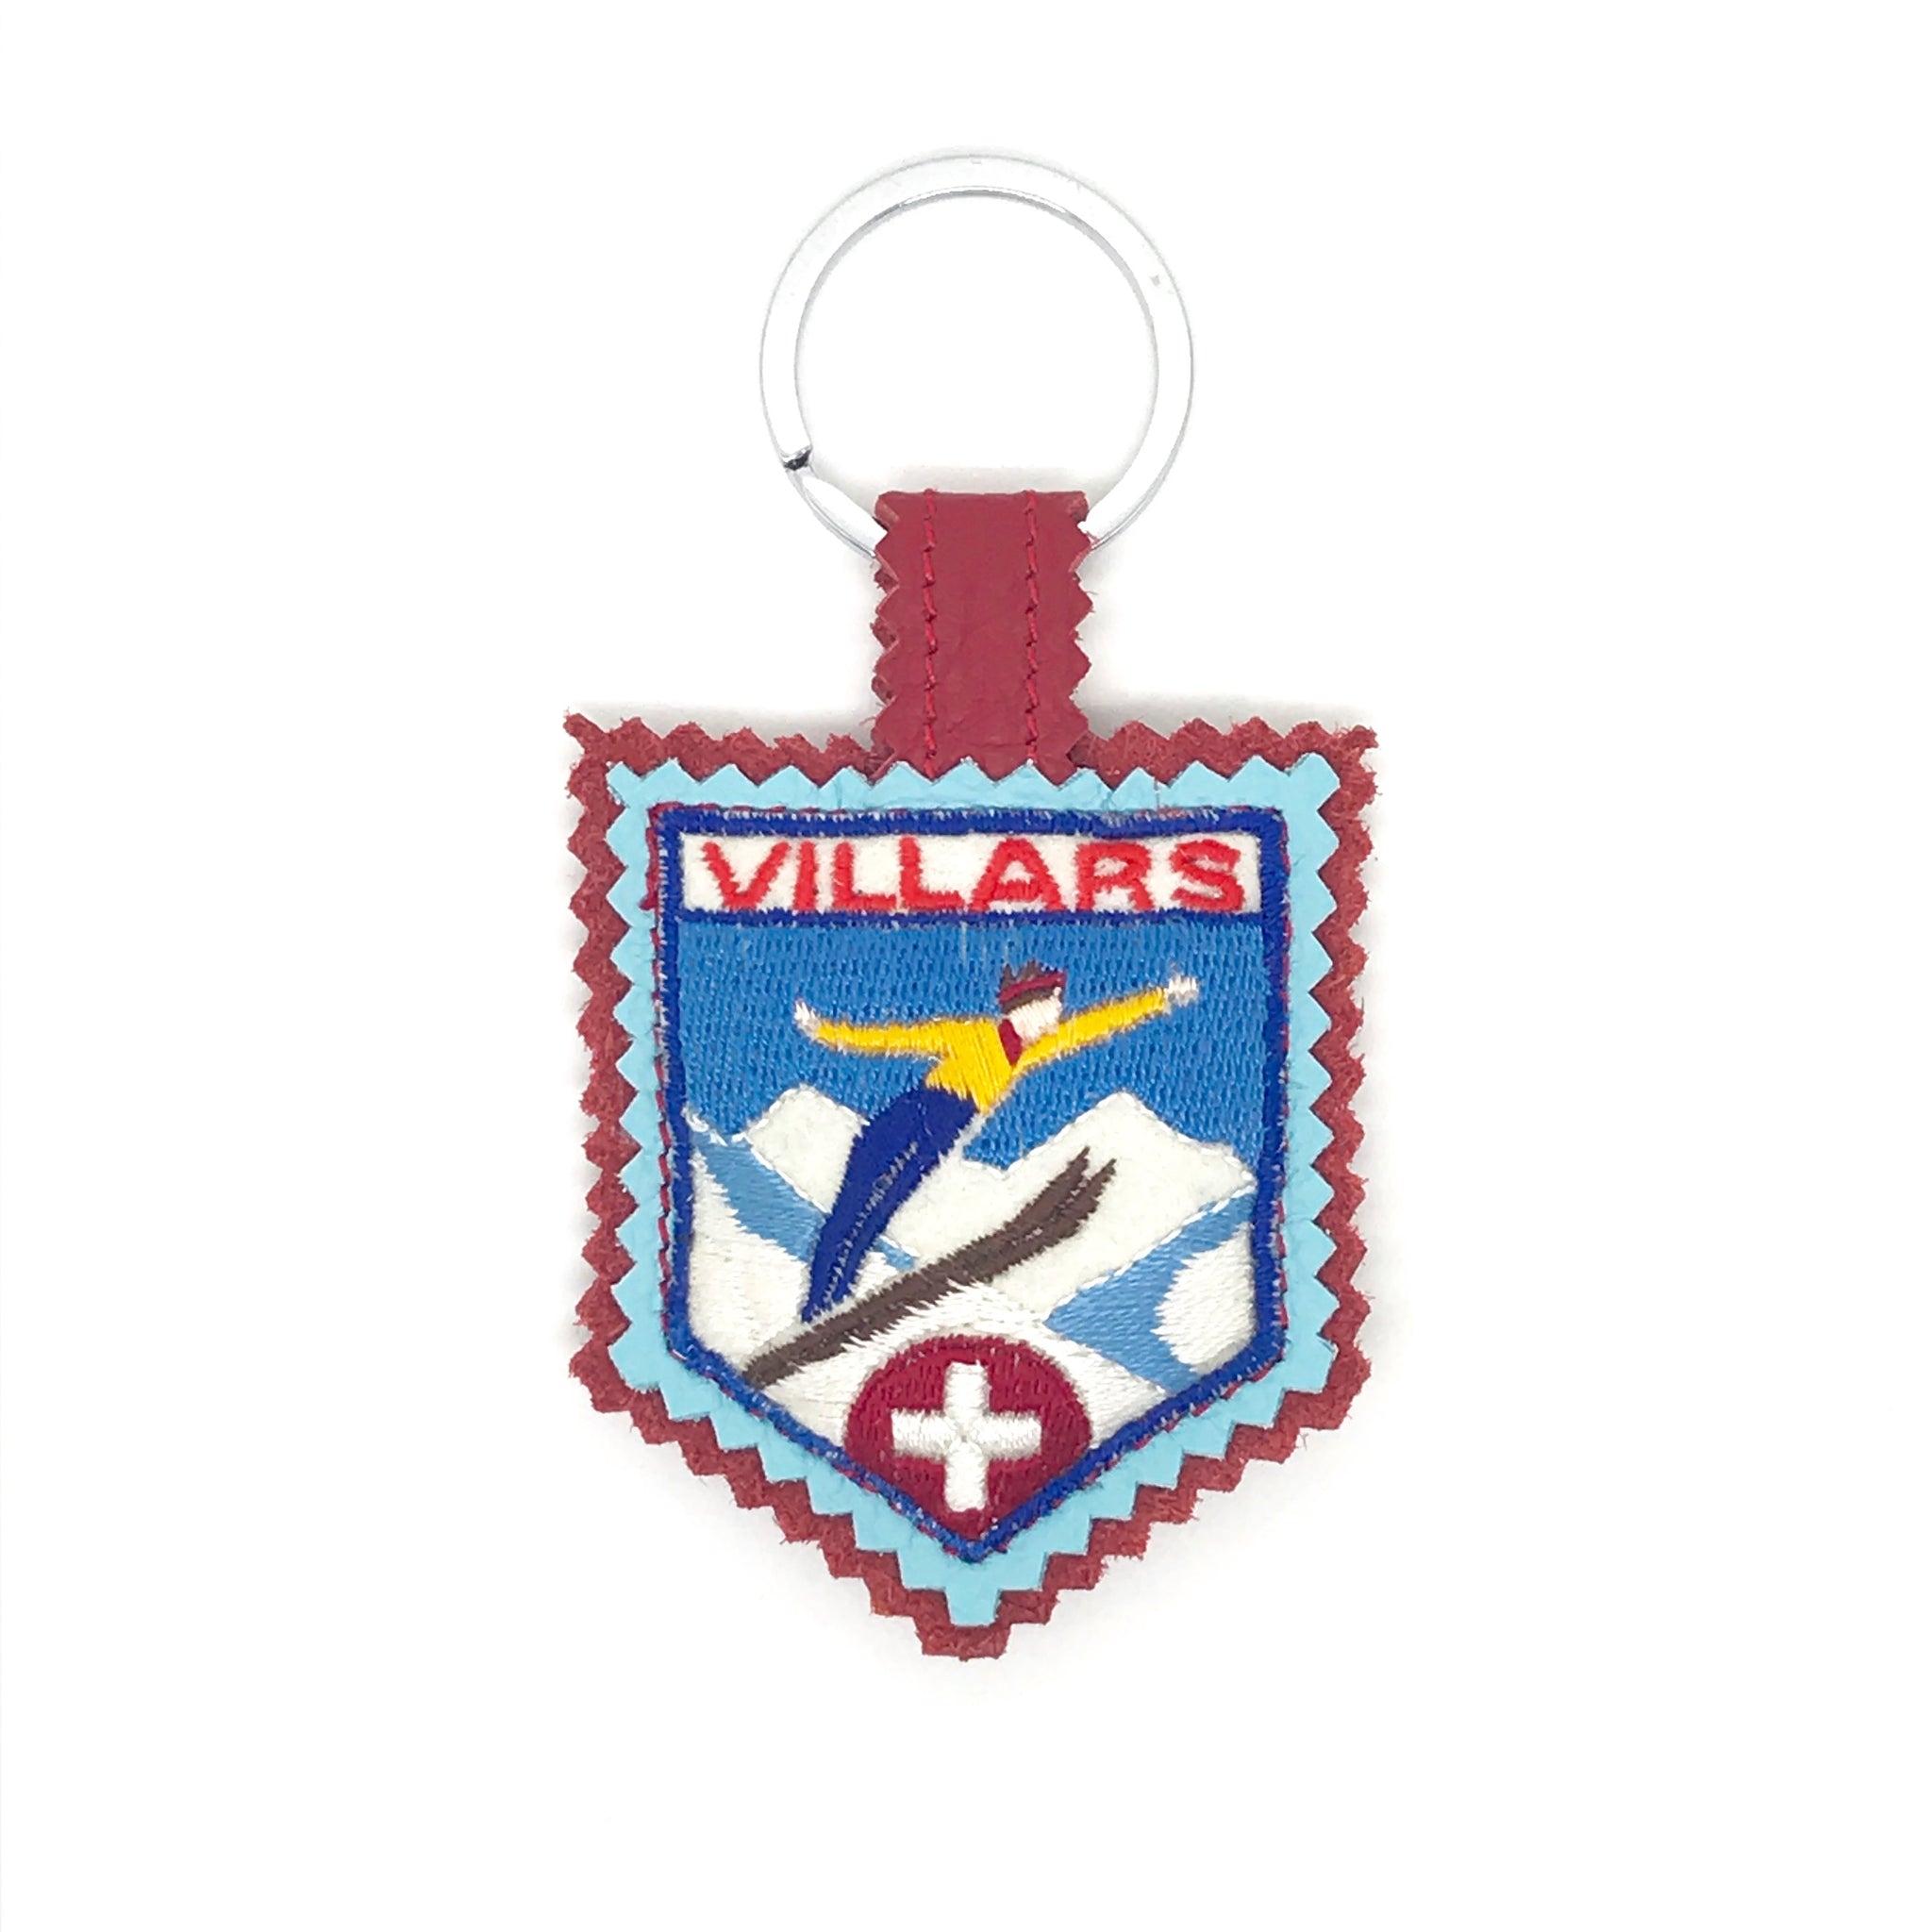 Vintage-Anhänger 'Villars'